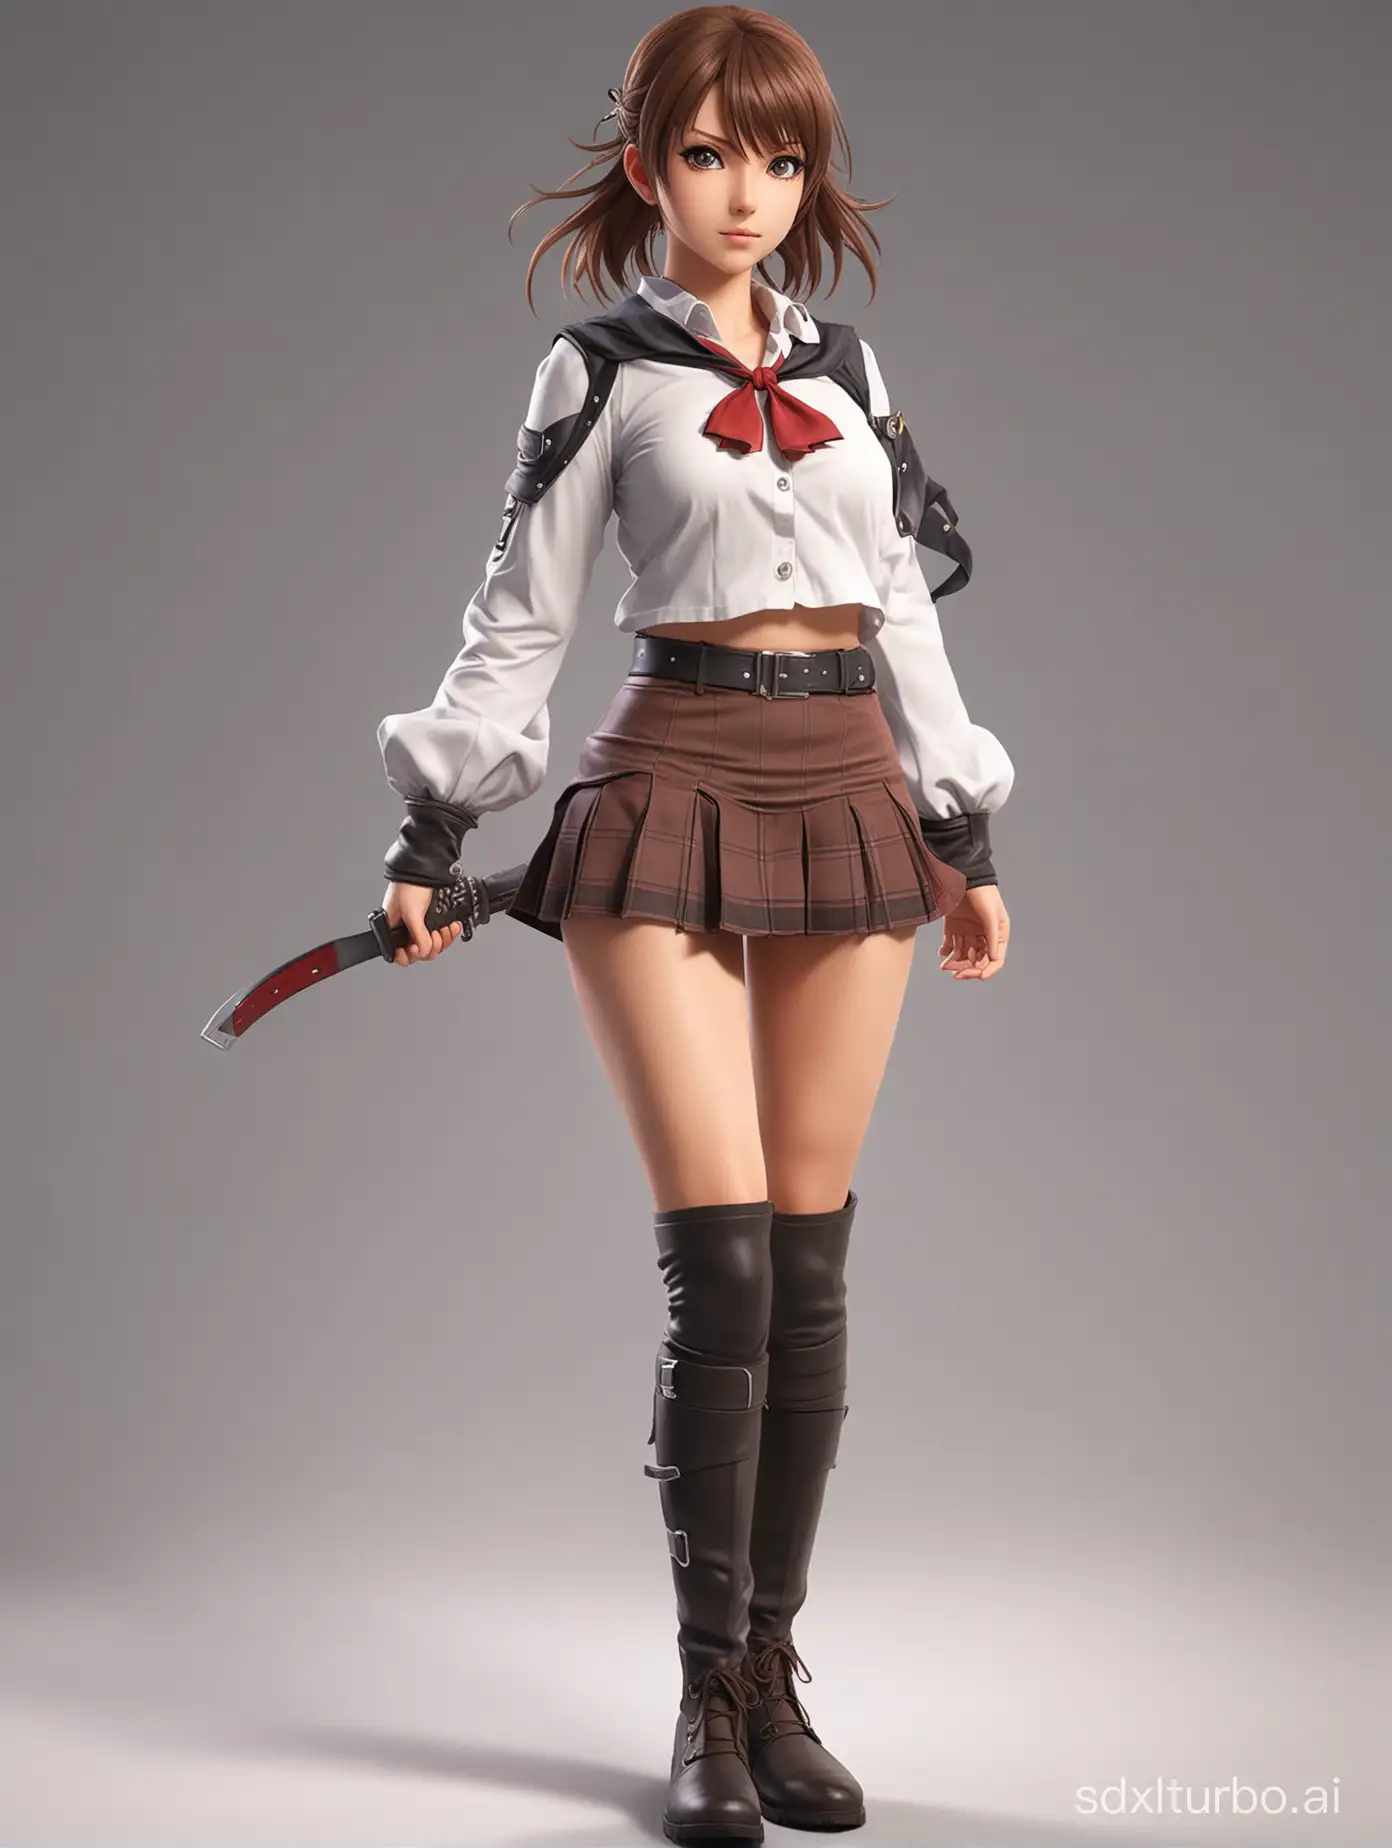 Anime-Girl-Warrior-Ready-for-Battle-Intense-Action-Scene